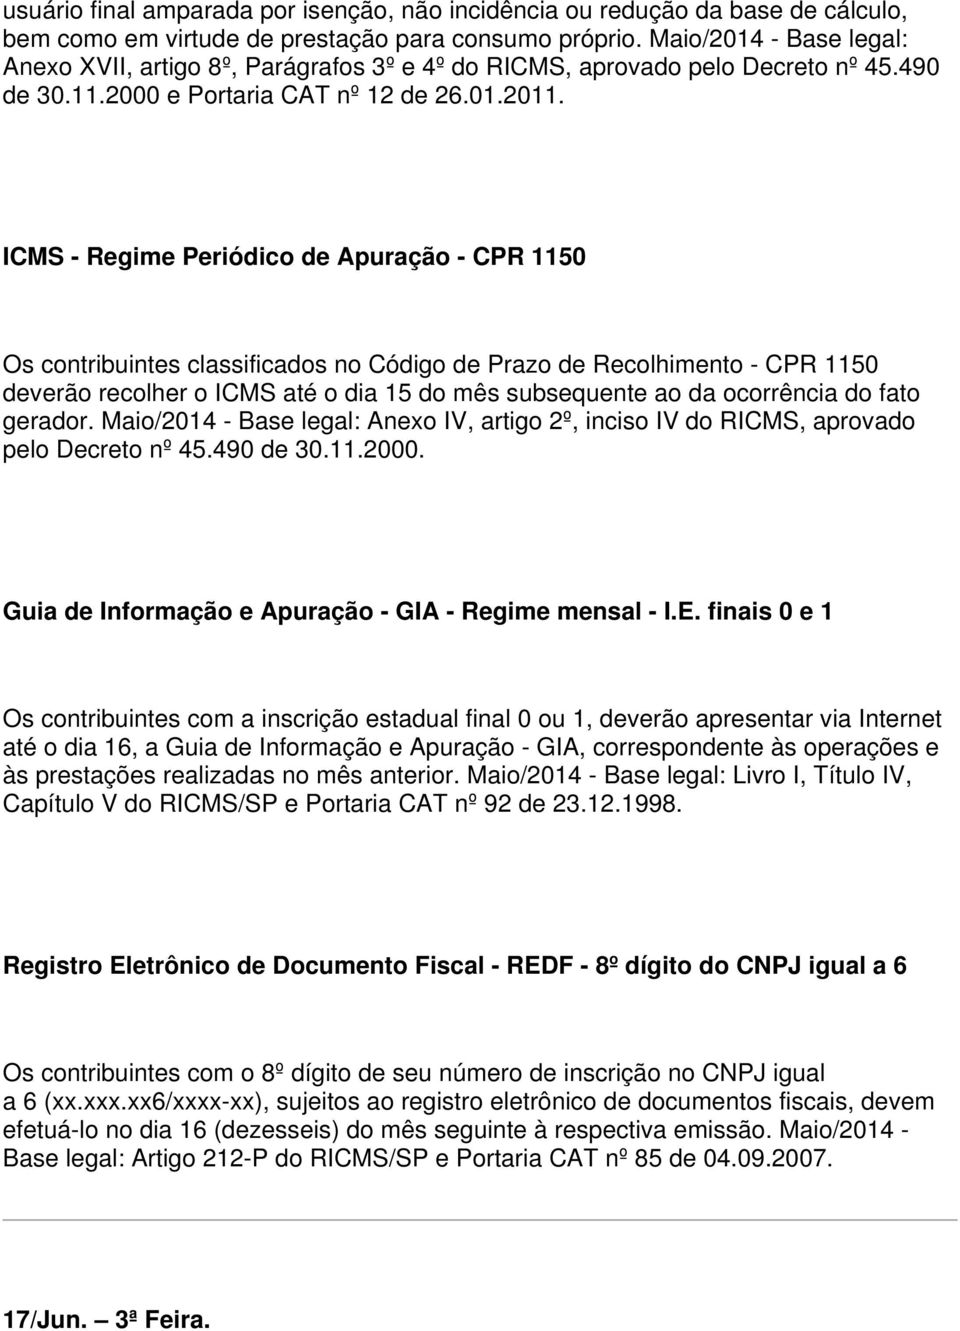 ICMS - Regime Periódico de Apuração - CPR 1150 Os contribuintes classificados no Código de Prazo de Recolhimento - CPR 1150 deverão recolher o ICMS até o dia 15 do mês subsequente ao da ocorrência do